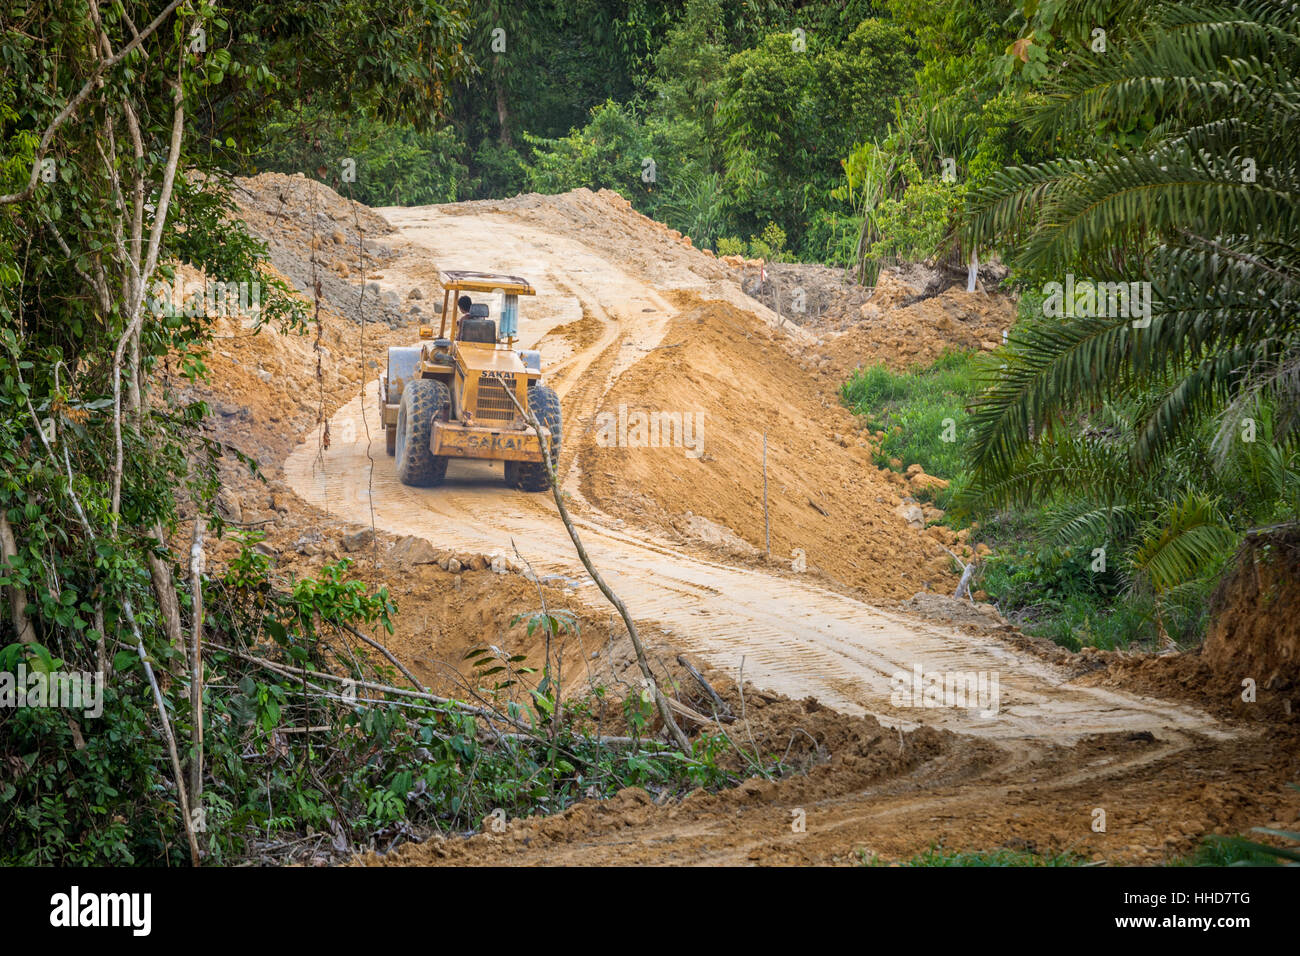 JCB escavatore su una strada essendo costruito attraverso la foresta pluviale in remote regioni settentrionali di Sabah, Malaysian Borneo Foto Stock